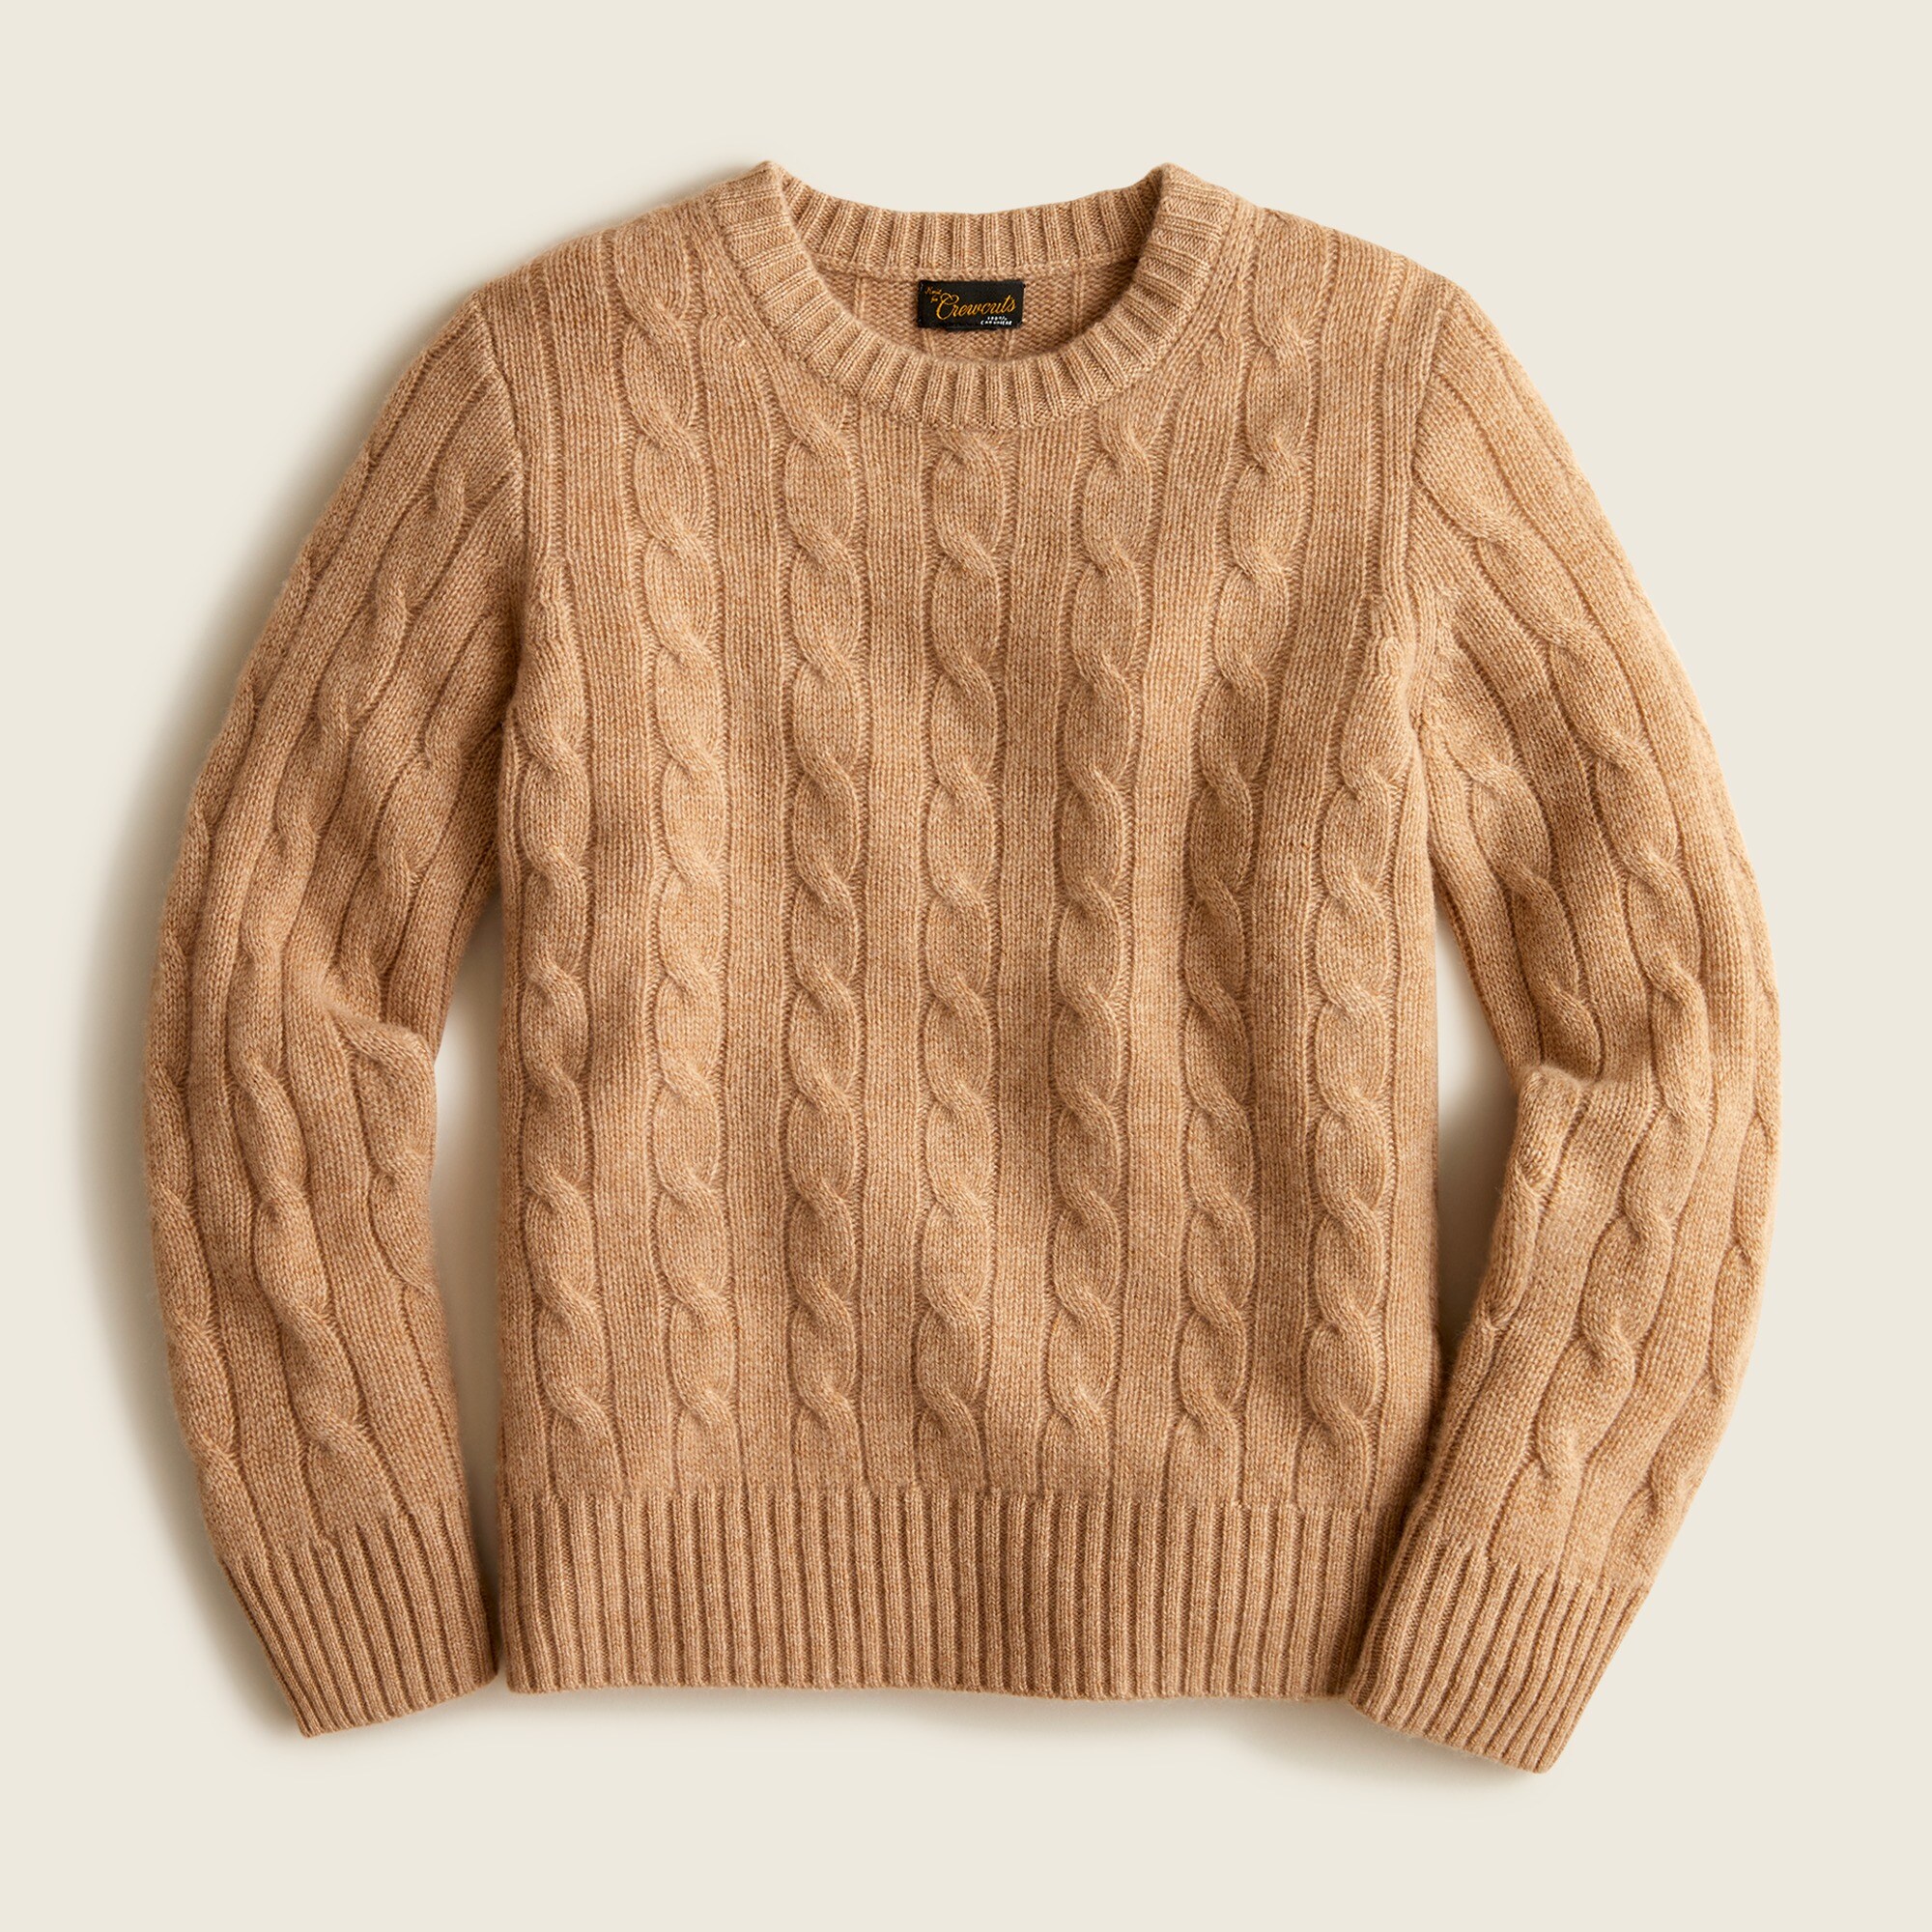 제이크루 보이즈 스웨터 J.crew Boys cable-knit cashmere crewneck sweater,HTHR CAMEL